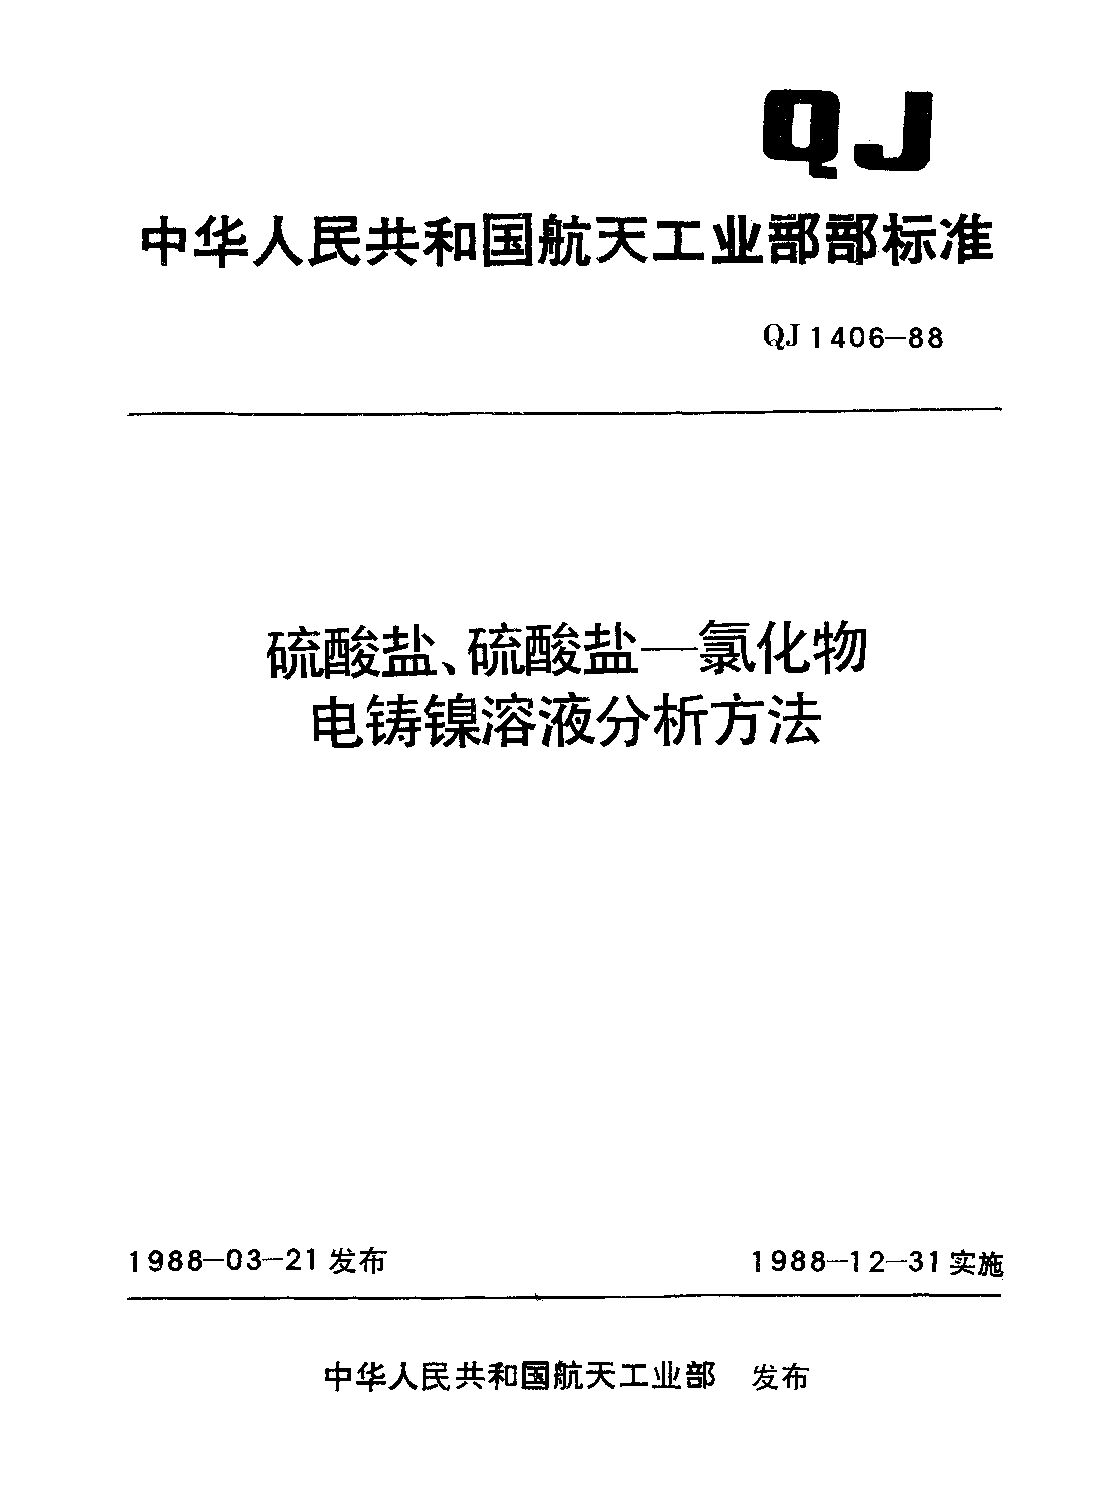 QJ 1406-1988封面图